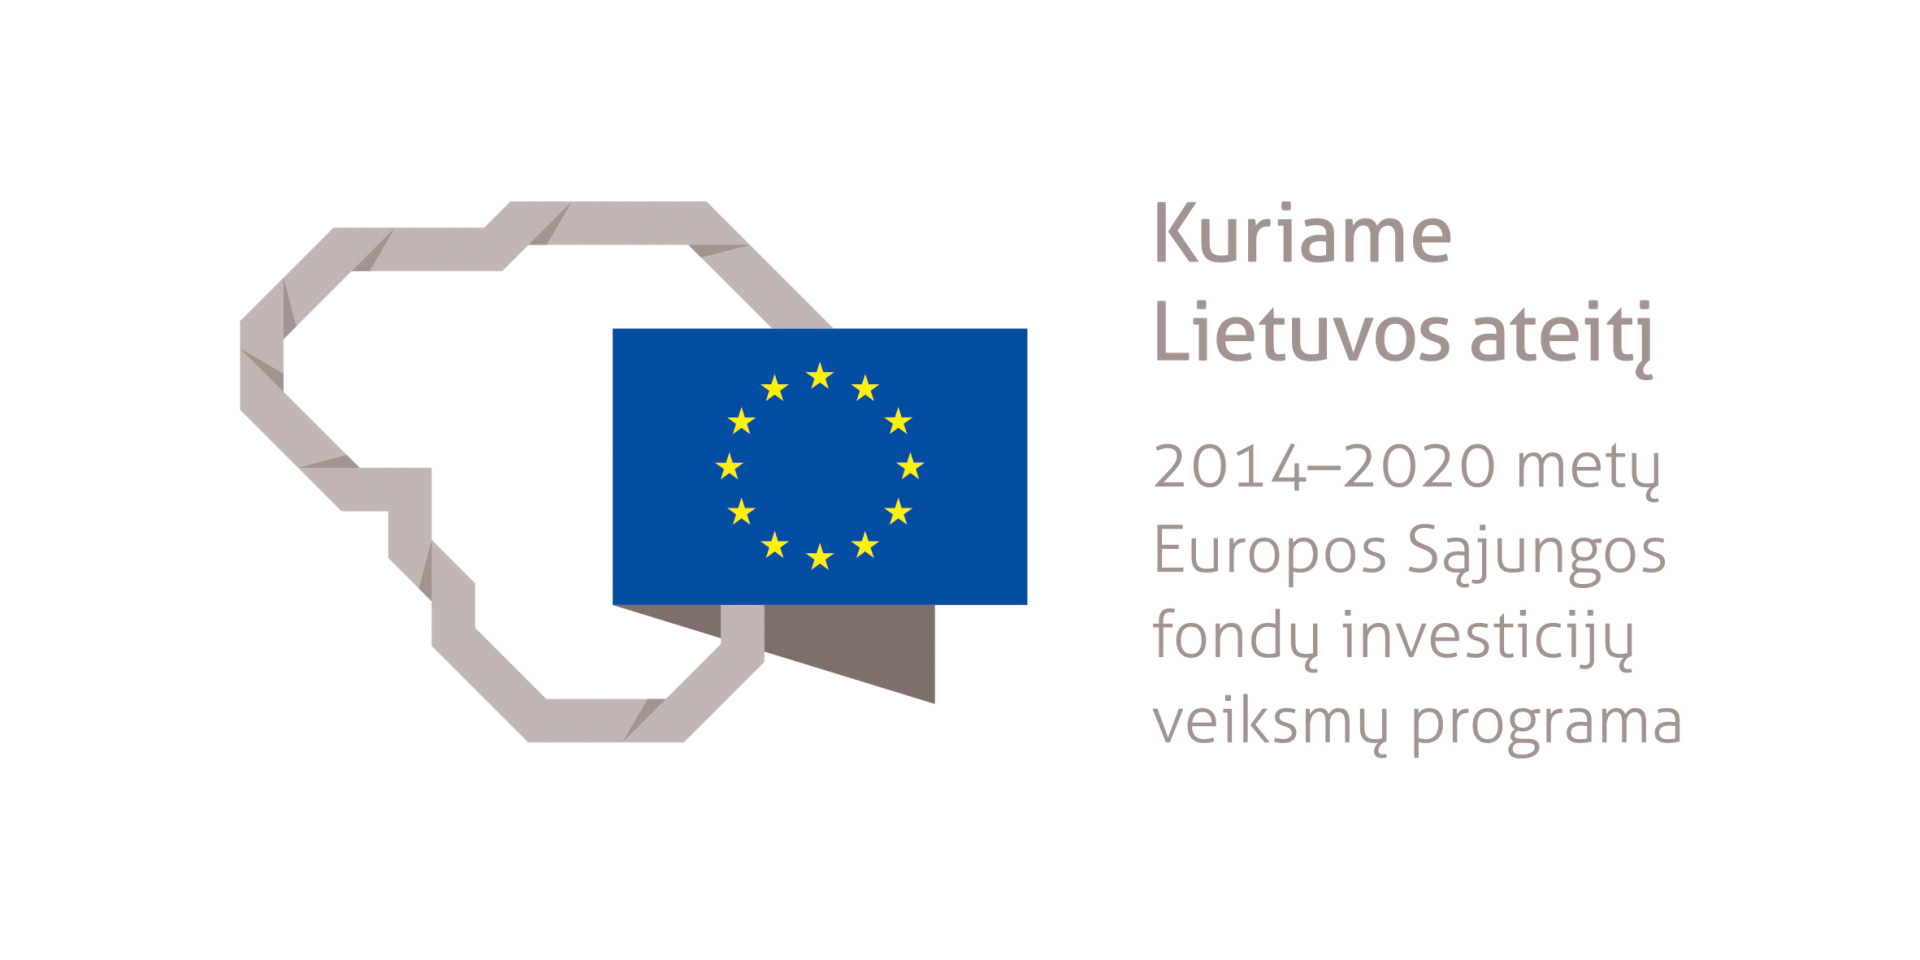 You are currently viewing Viešosios konsultacijos dėl 2021–2027 m. ES fondų investicijų programos projekto